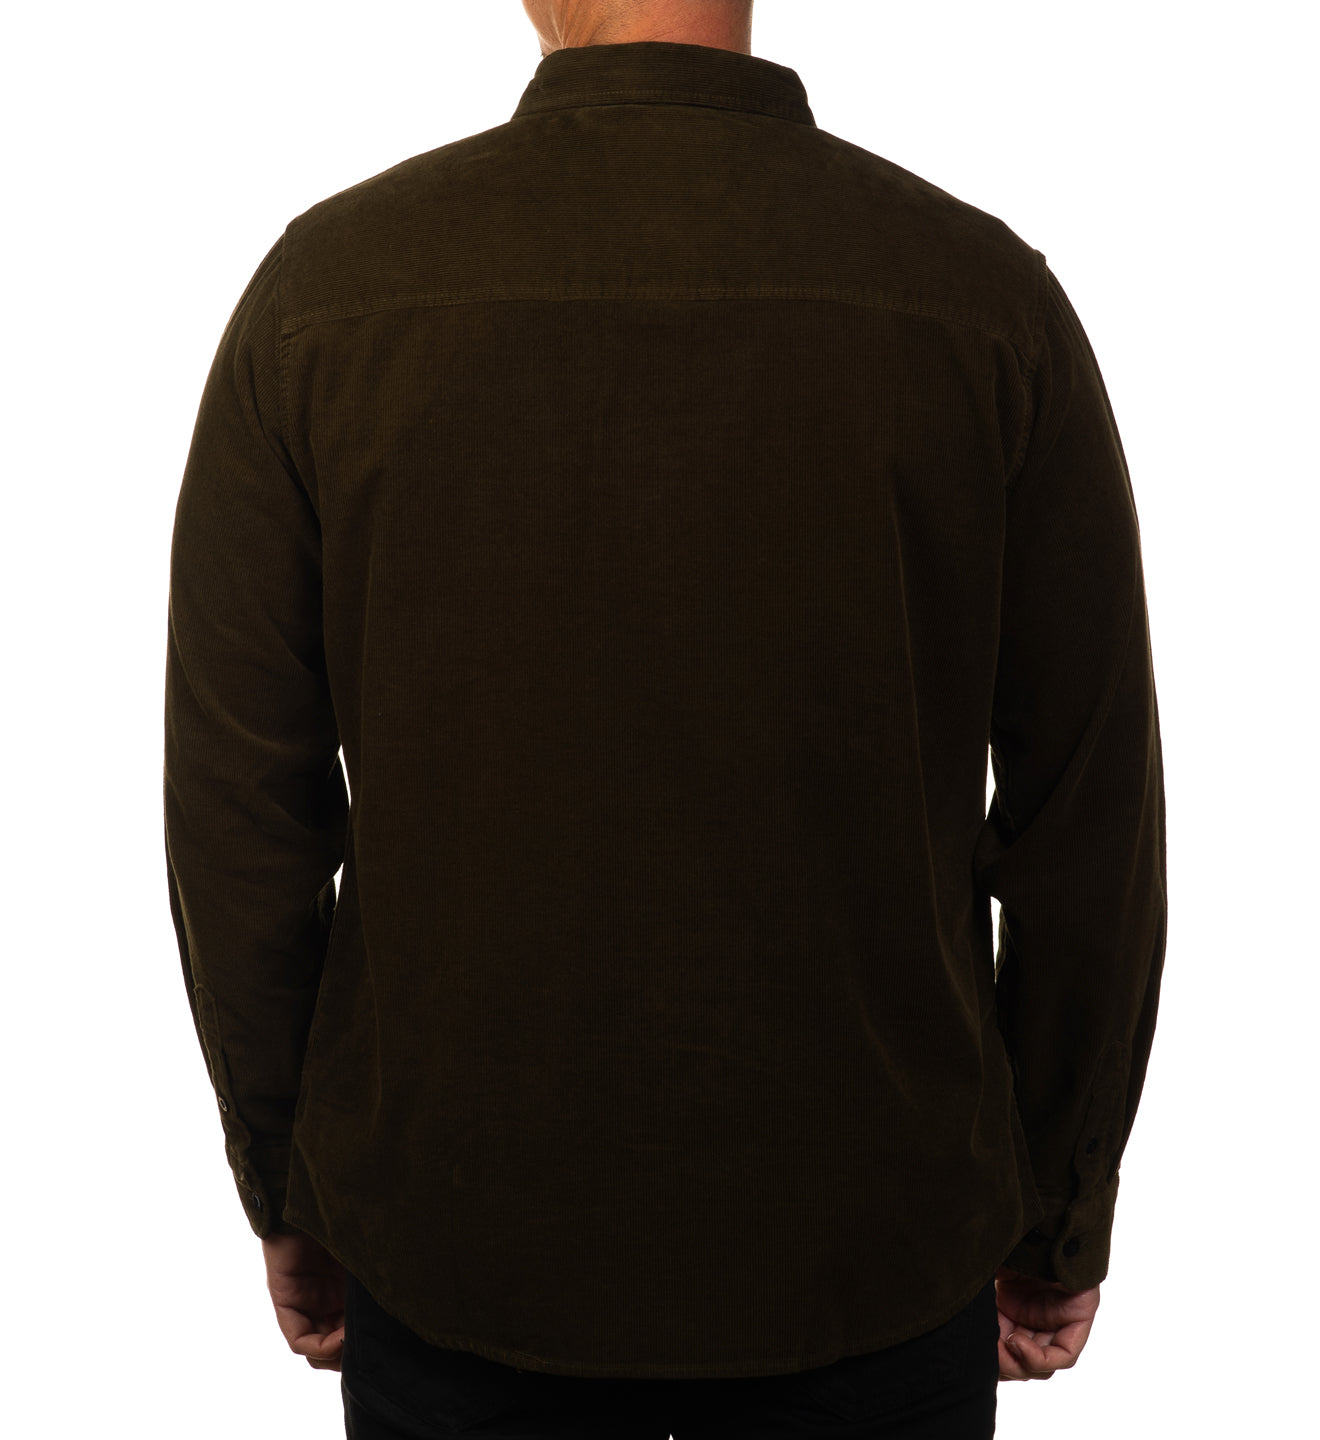 Full Nelson Corduroy Shirt Jacket - Olive